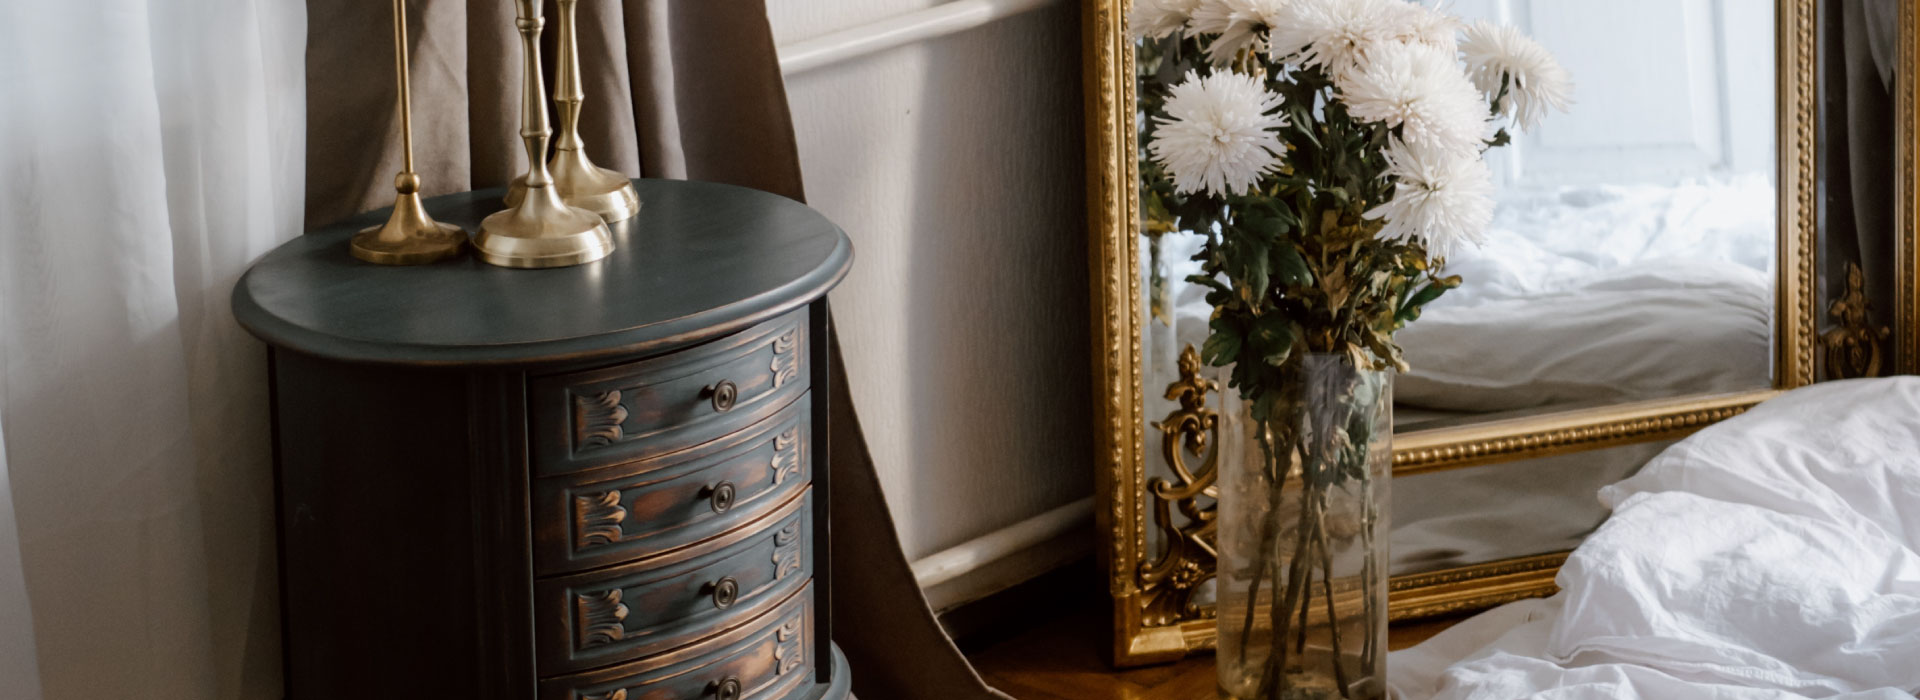 Zbliżenie na niską retro szarkę z szufladami o okrągłej formie. W tle lustro stojące na ziemi w złotej ramie oraz wysoki wazon z kwiatami.